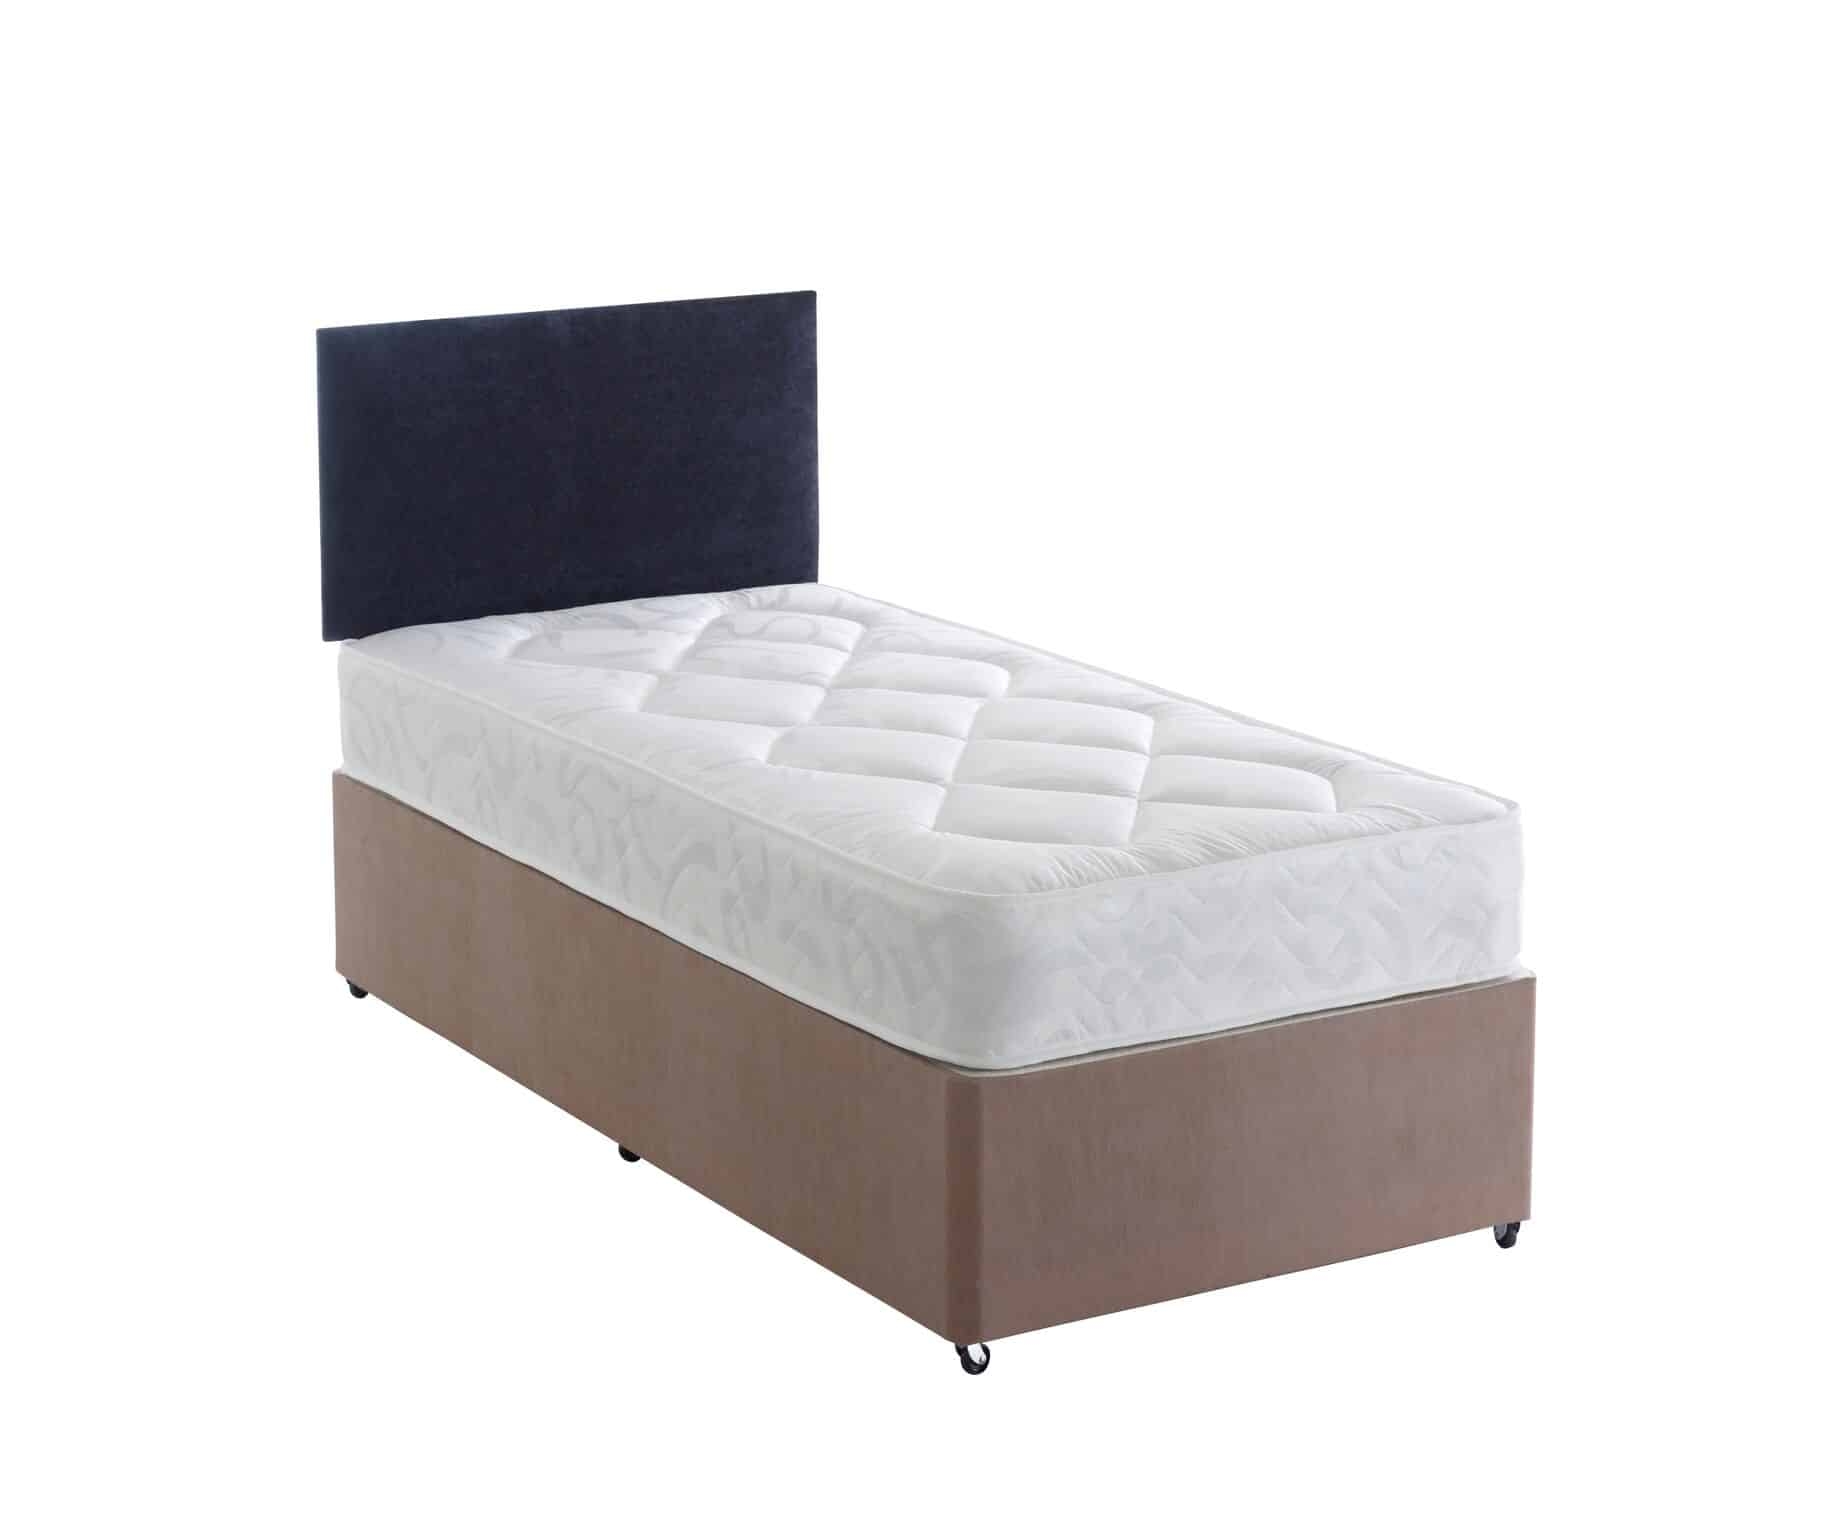 Windsor – Divan Double Bed Set